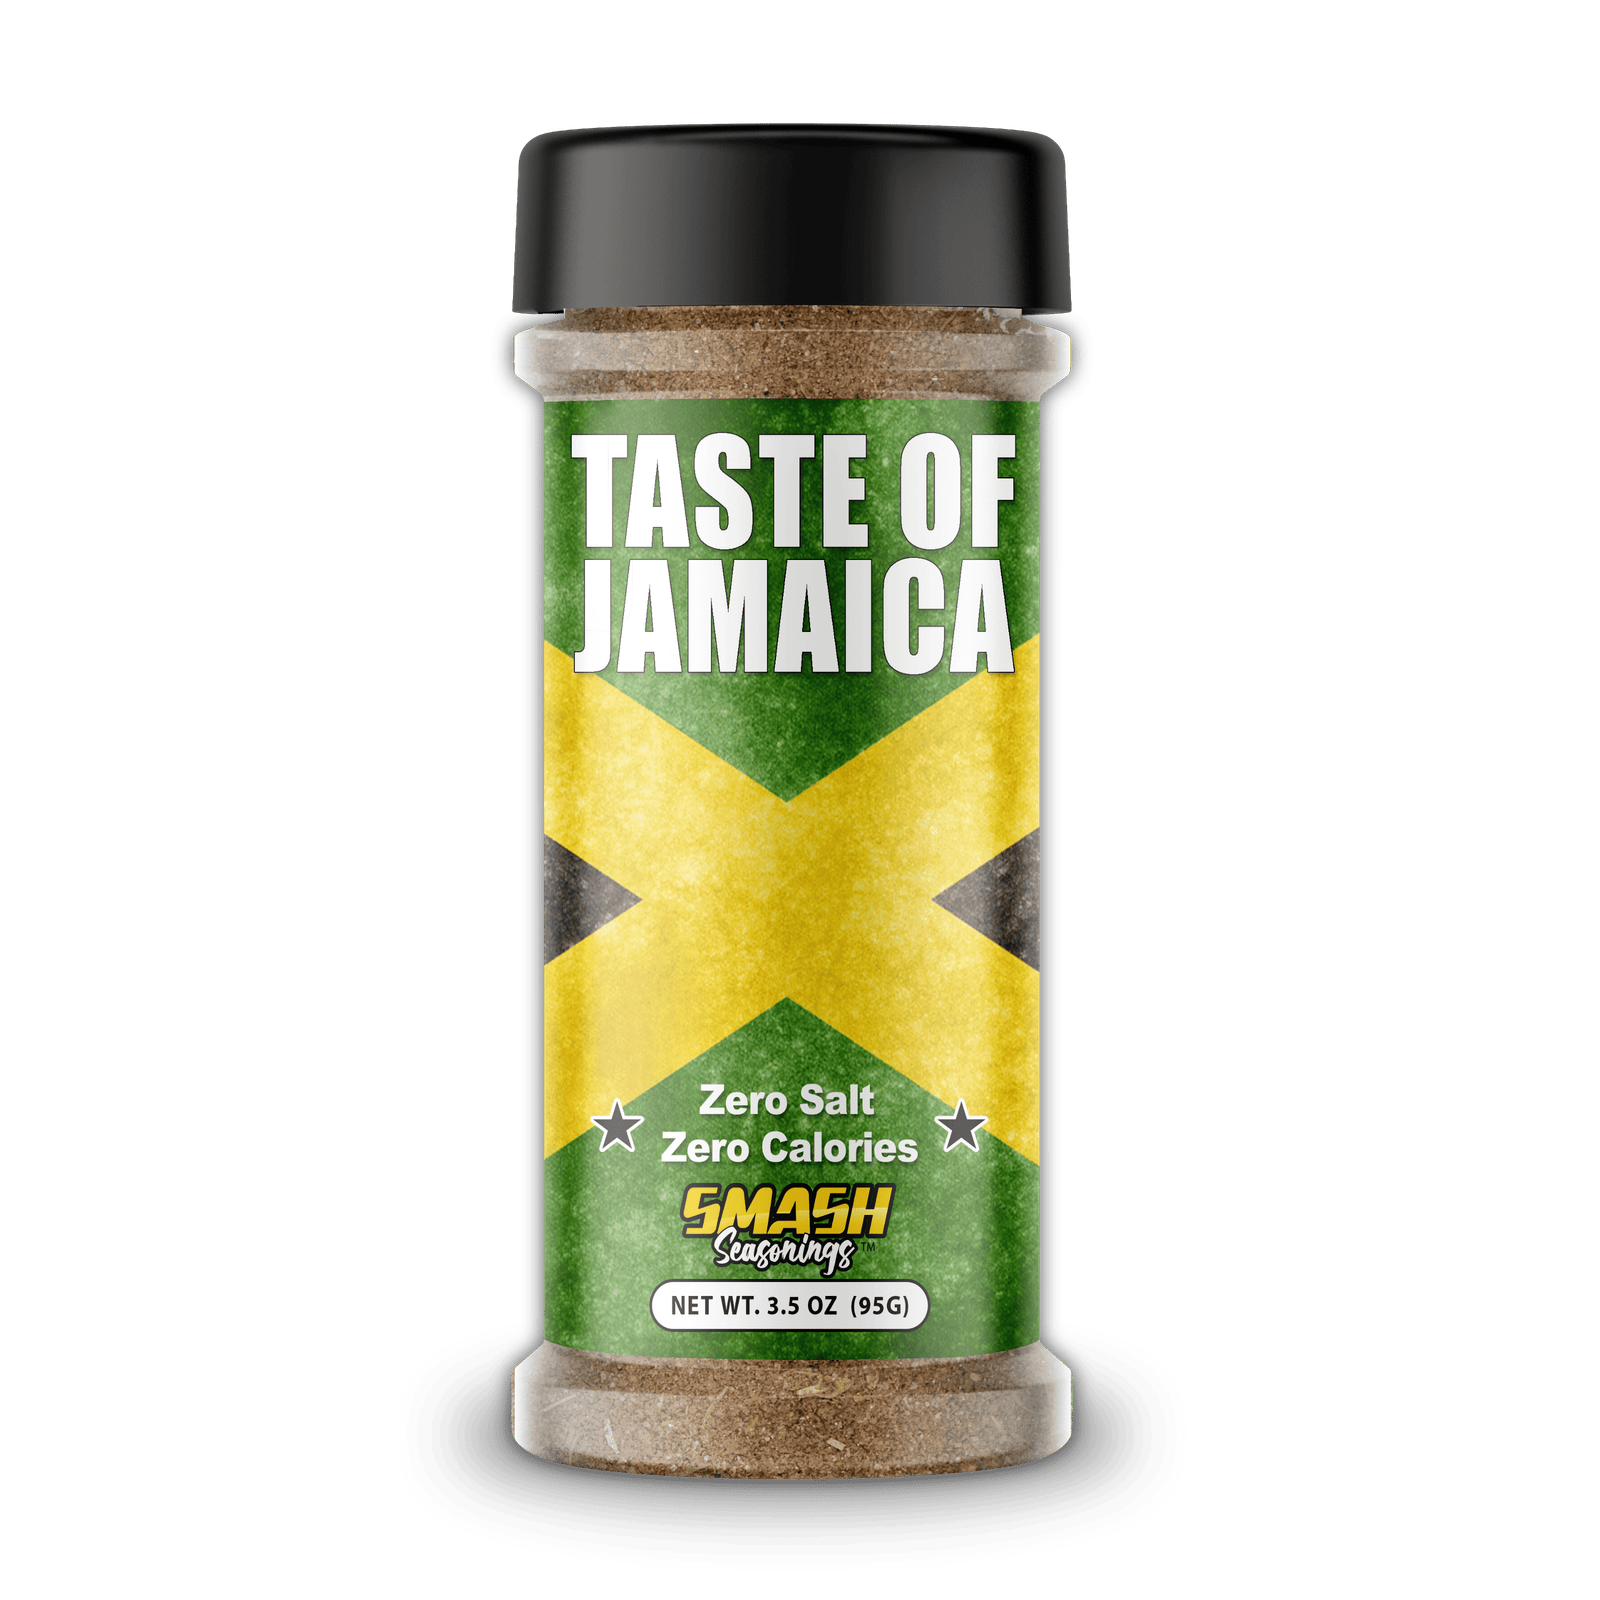 Taste Of Jamaica Seasoning Smash Seasonings